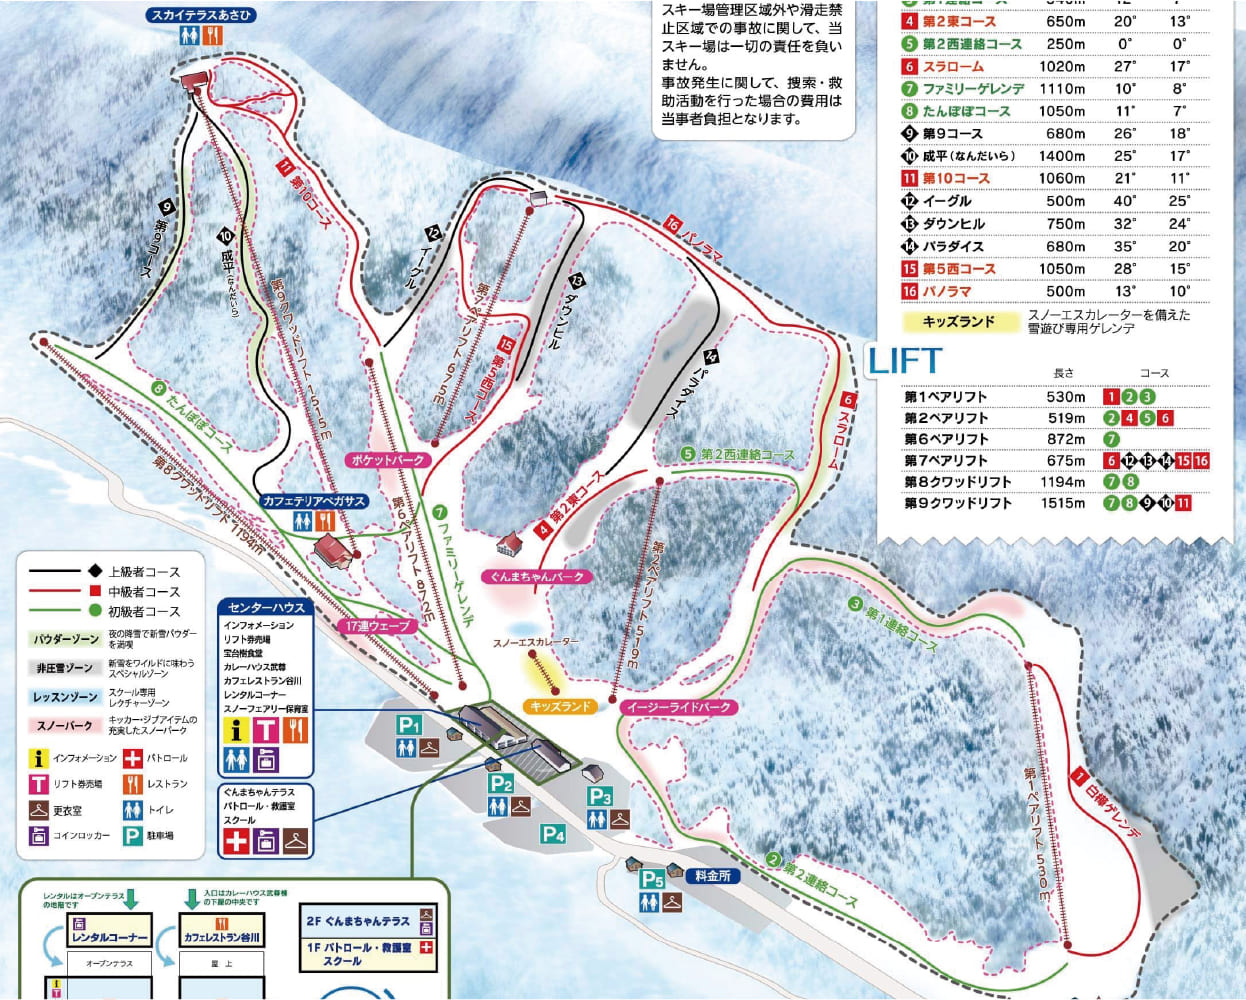 宝台樹スキー場コース図